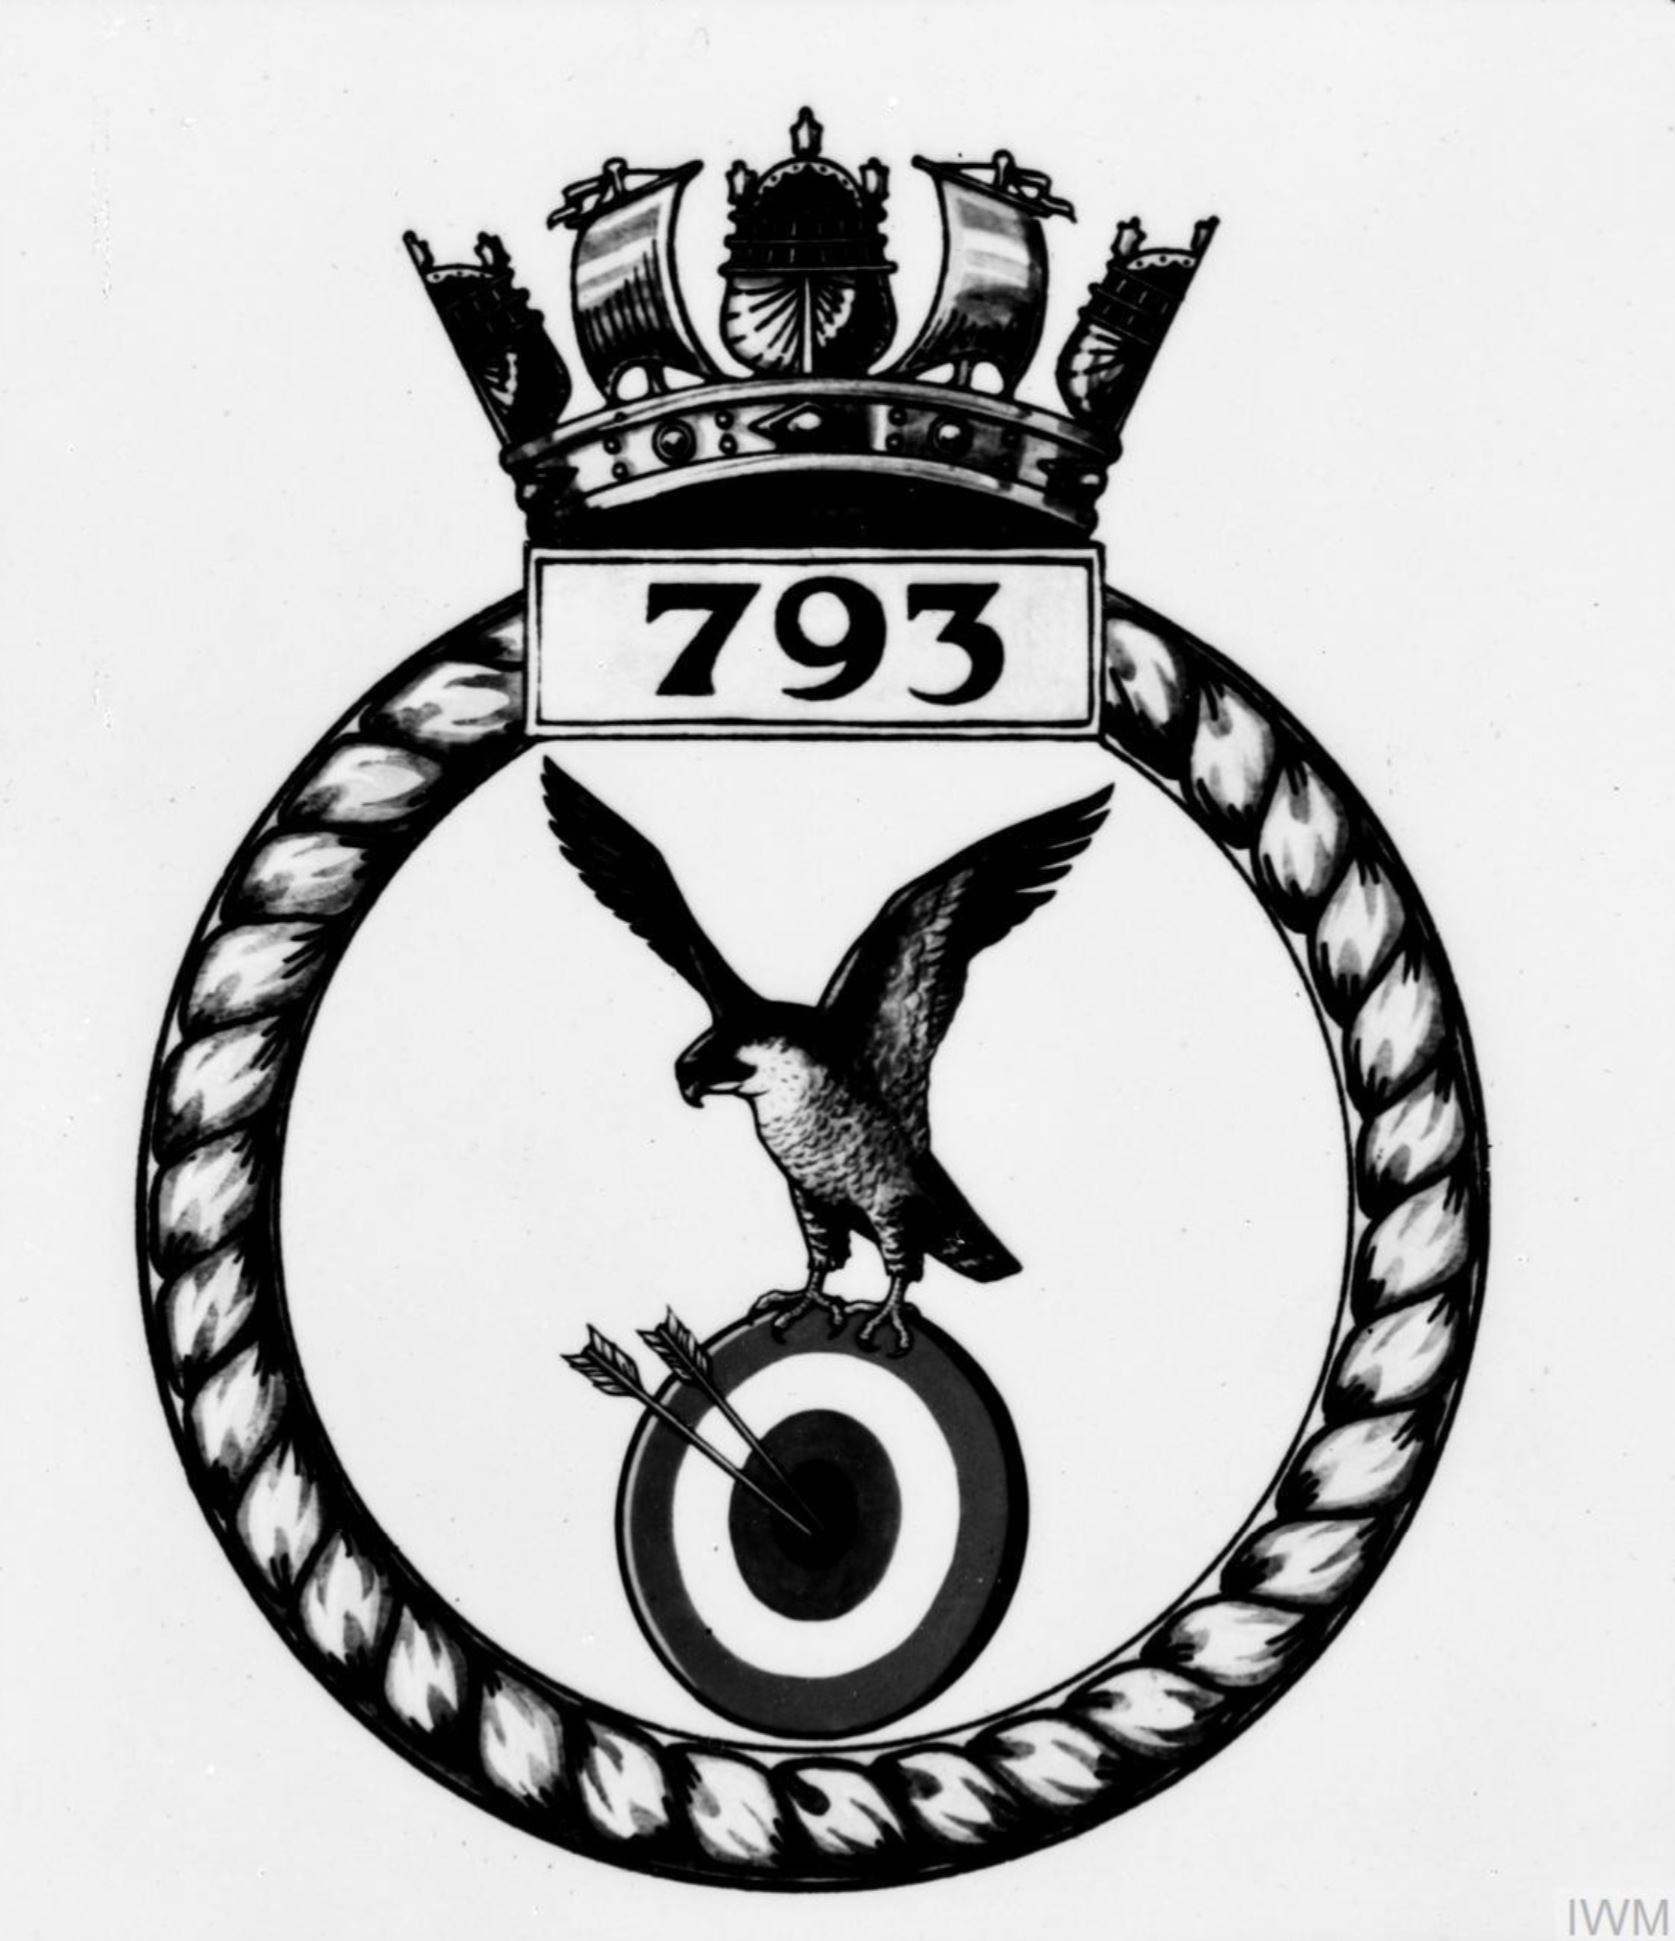 Fleet Air Arm crest of 793 Squadron IWM A28148